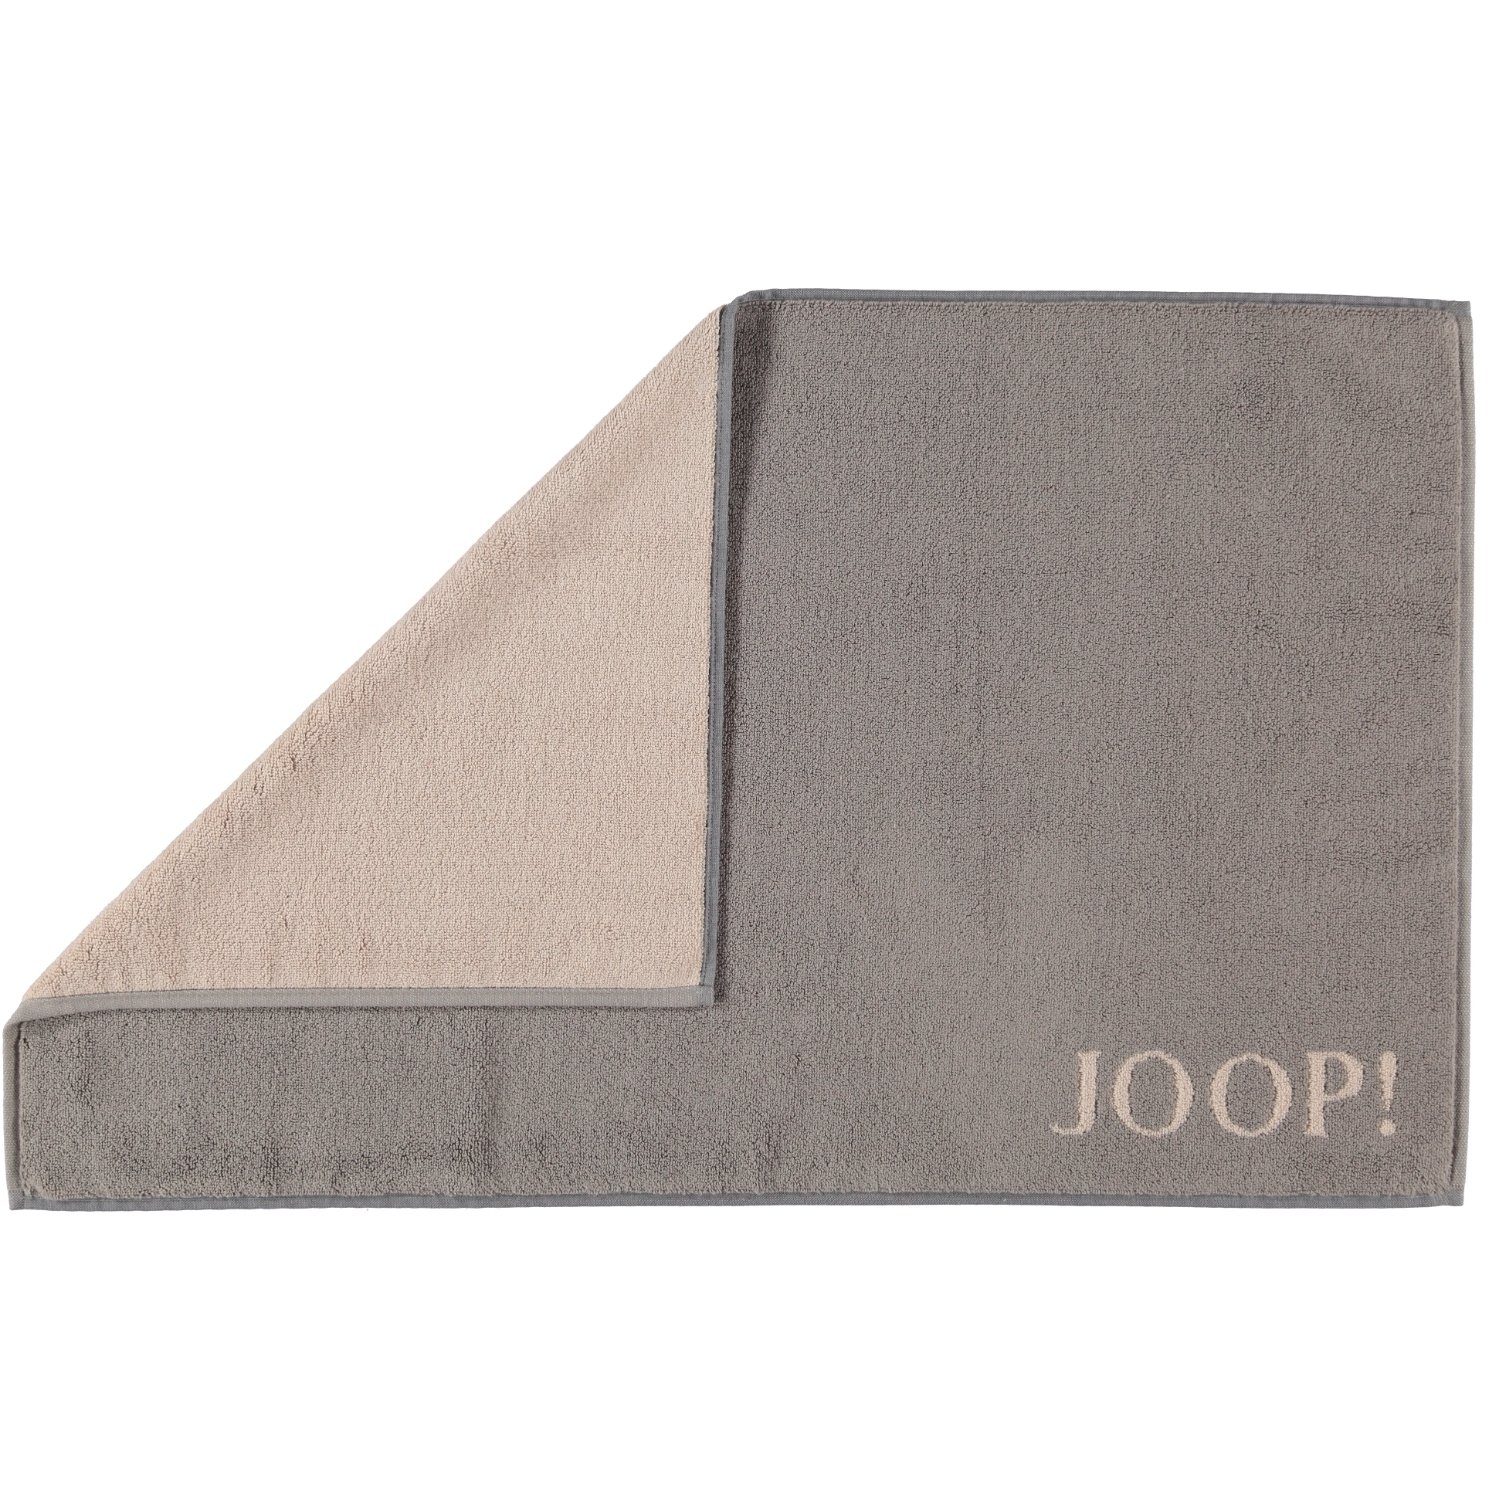 1600 Braun/Grau 100% Joop!, Doubleface Classic Duschmatte Baumwolle